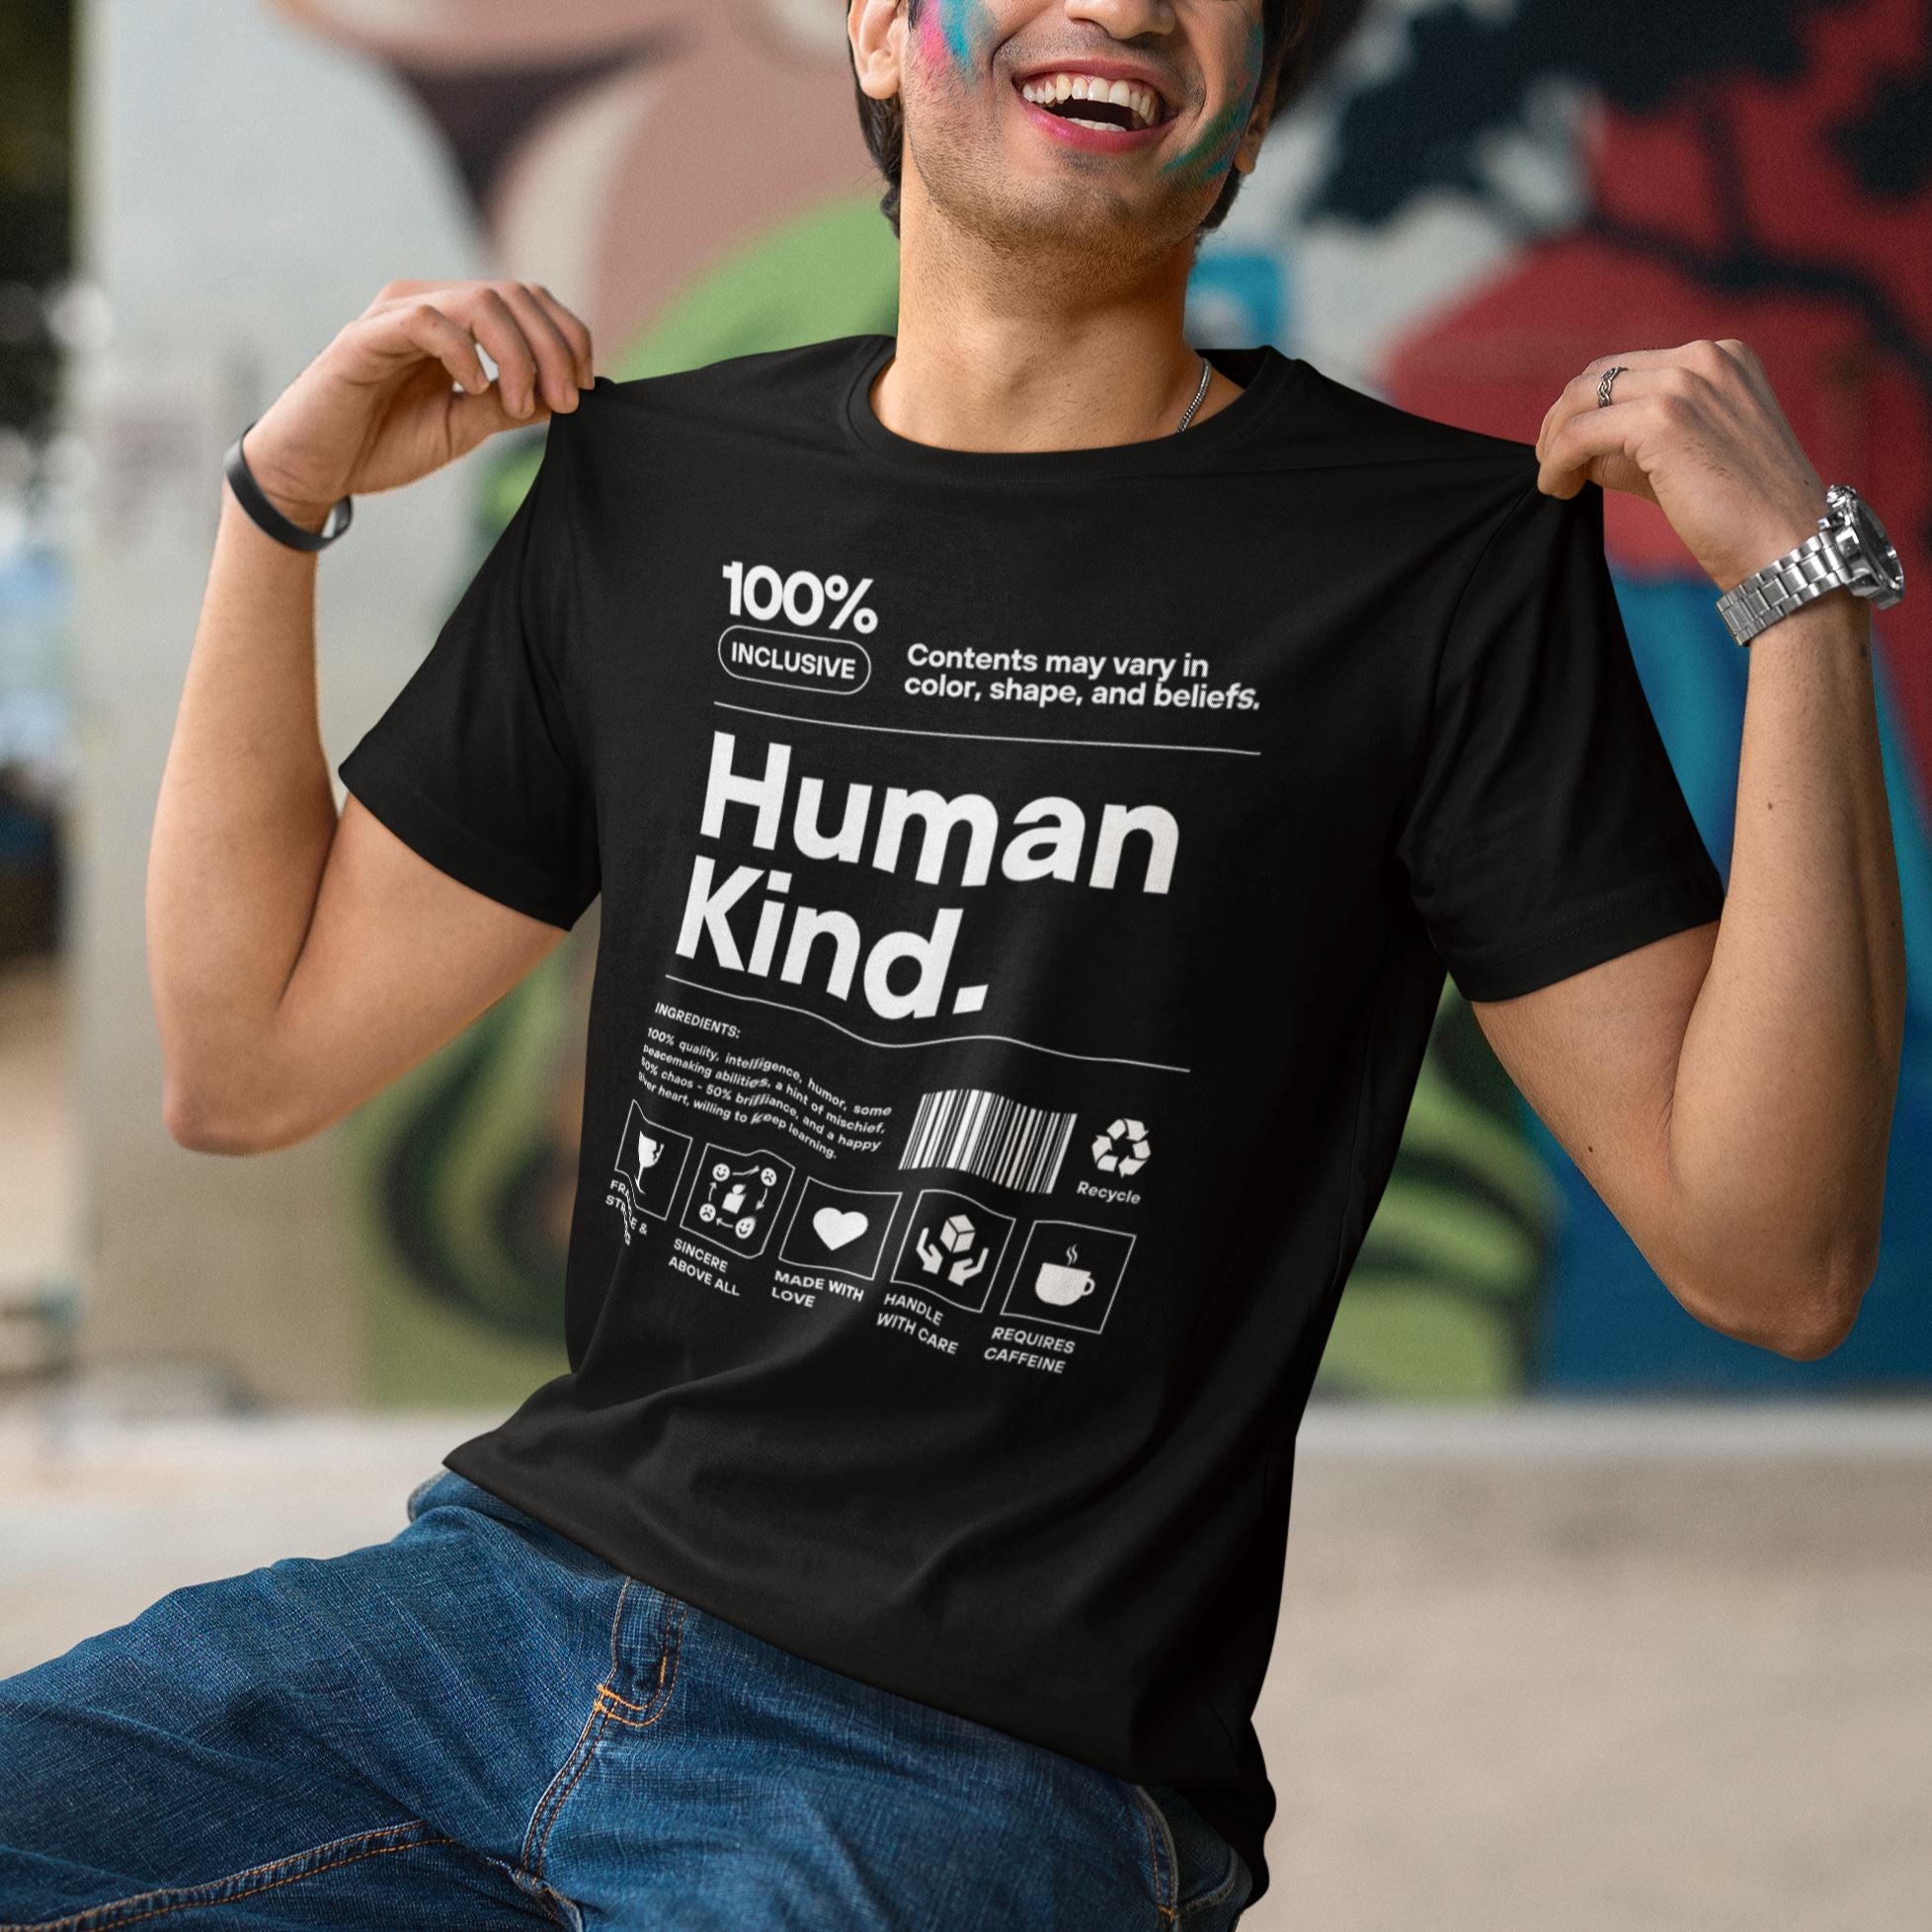 Sea amable | Camiseta de manga corta unisex (varios colores) – The ...